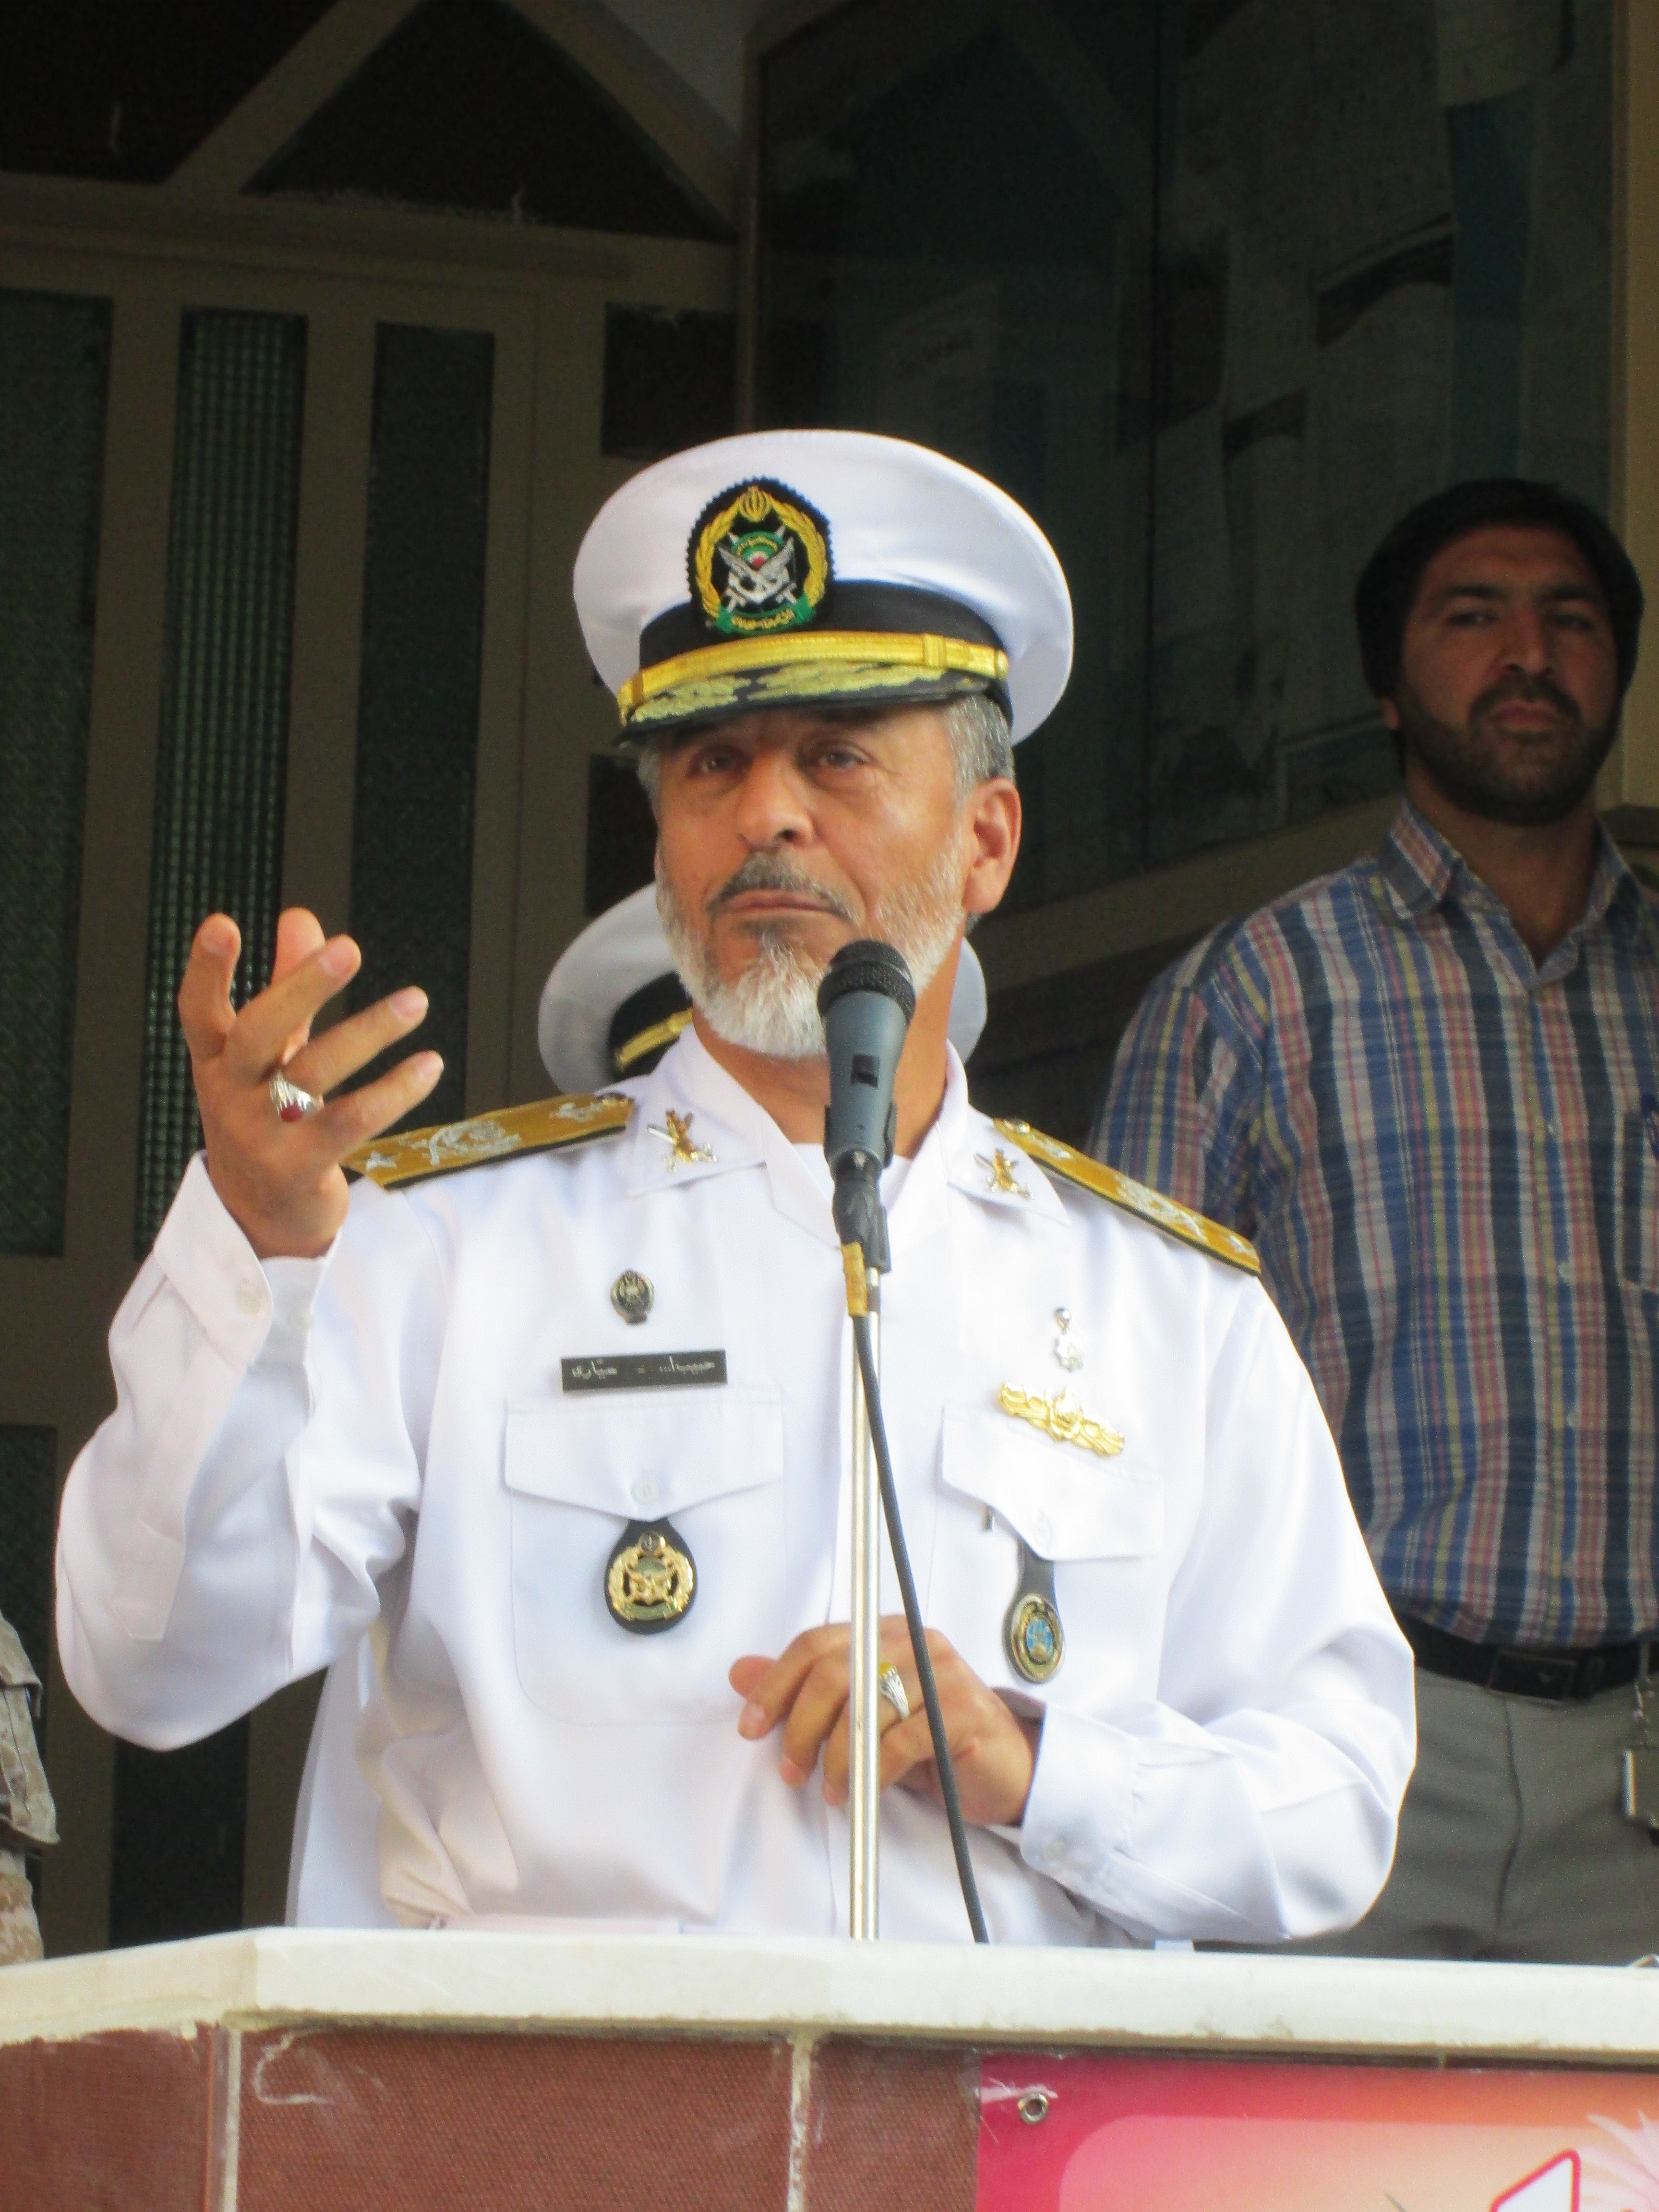 بازگشایی مدرسه در روز اول مهرماه با حضور دریادار سیاری فرمانده نیروی دریایی ارتش